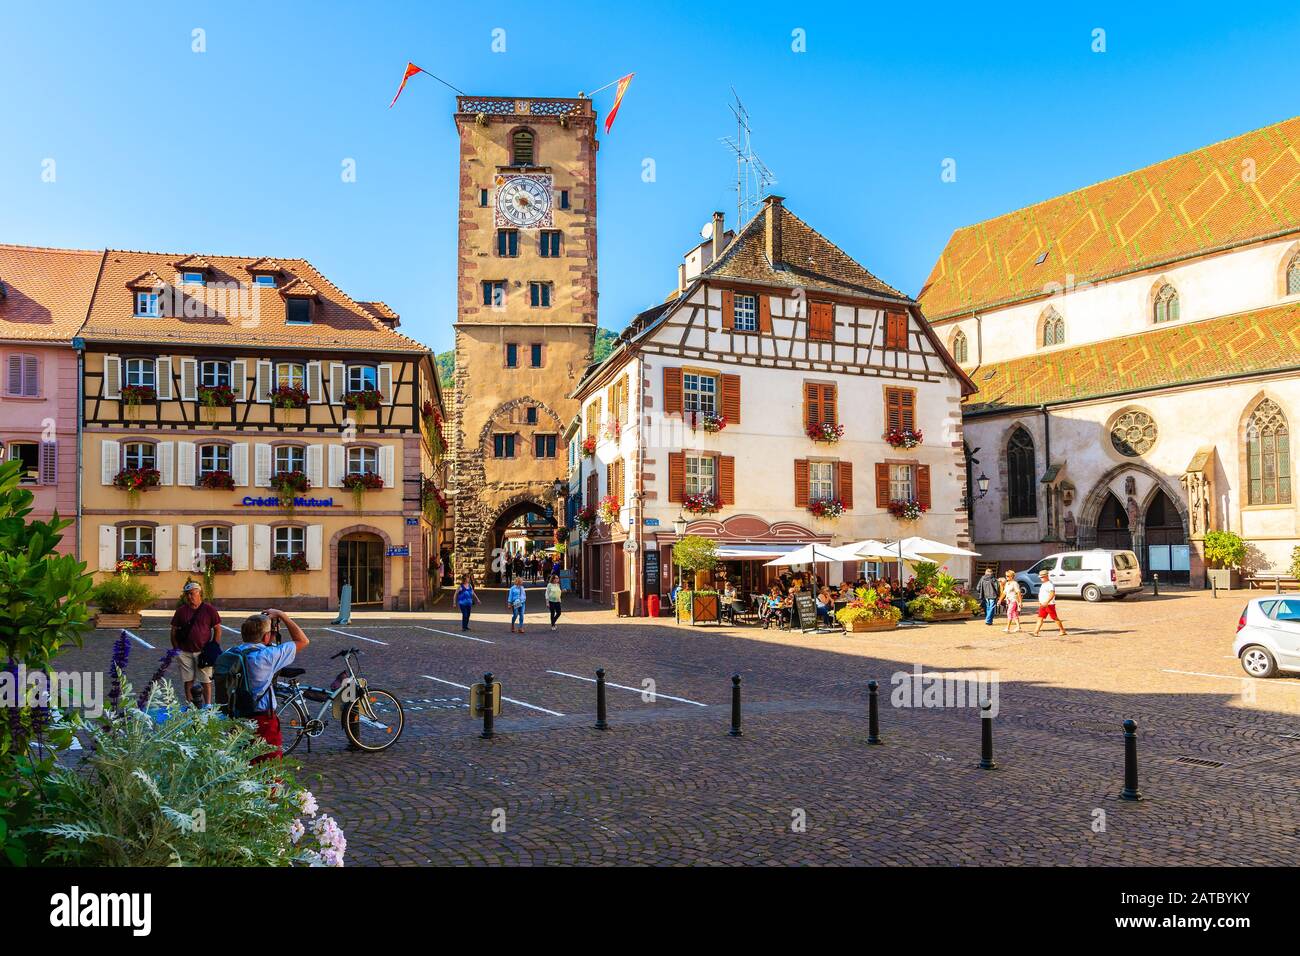 REGIÓN VINÍCOLA de Alsacia, FRANCIA - 20 DE SEPTIEMBRE de 2019: Plaza de la ciudad y casas de colores en Ribeauville, que es famoso lugar situado en la Ruta del vino de Alsacia, Francia Foto de stock